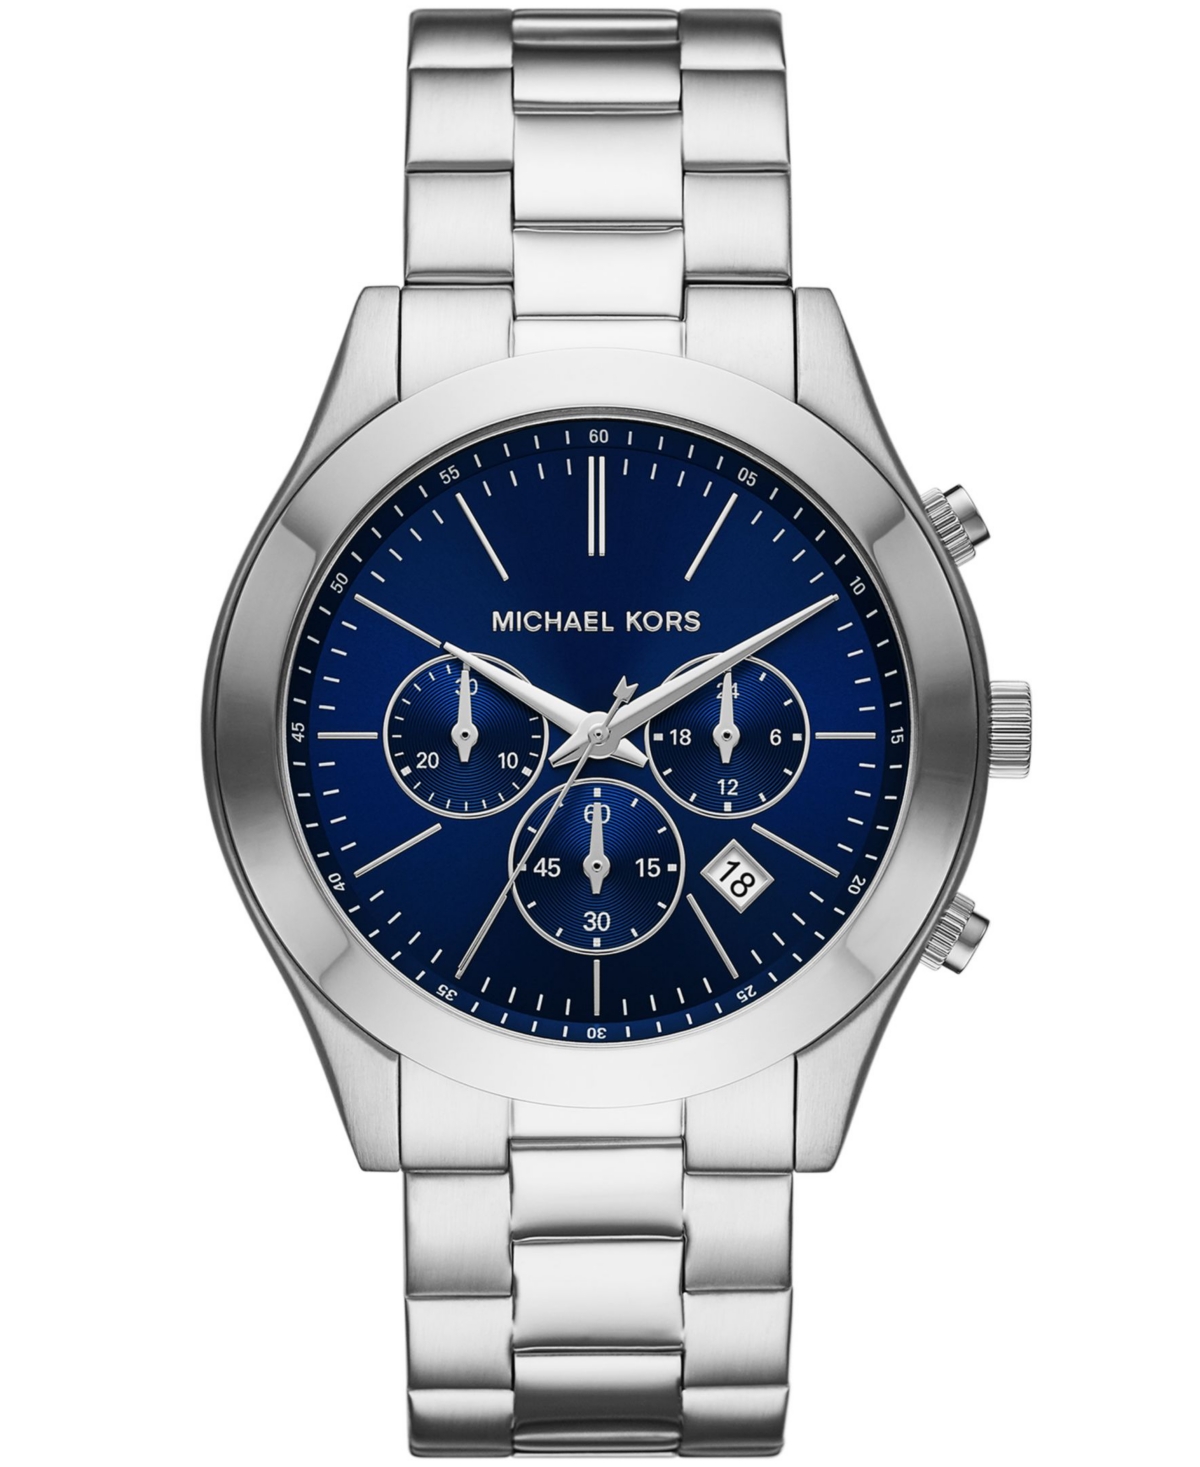 Michael Kors Men's Slim Runway Silver-tone Stainless Steel Bracelet Watch, 44mm